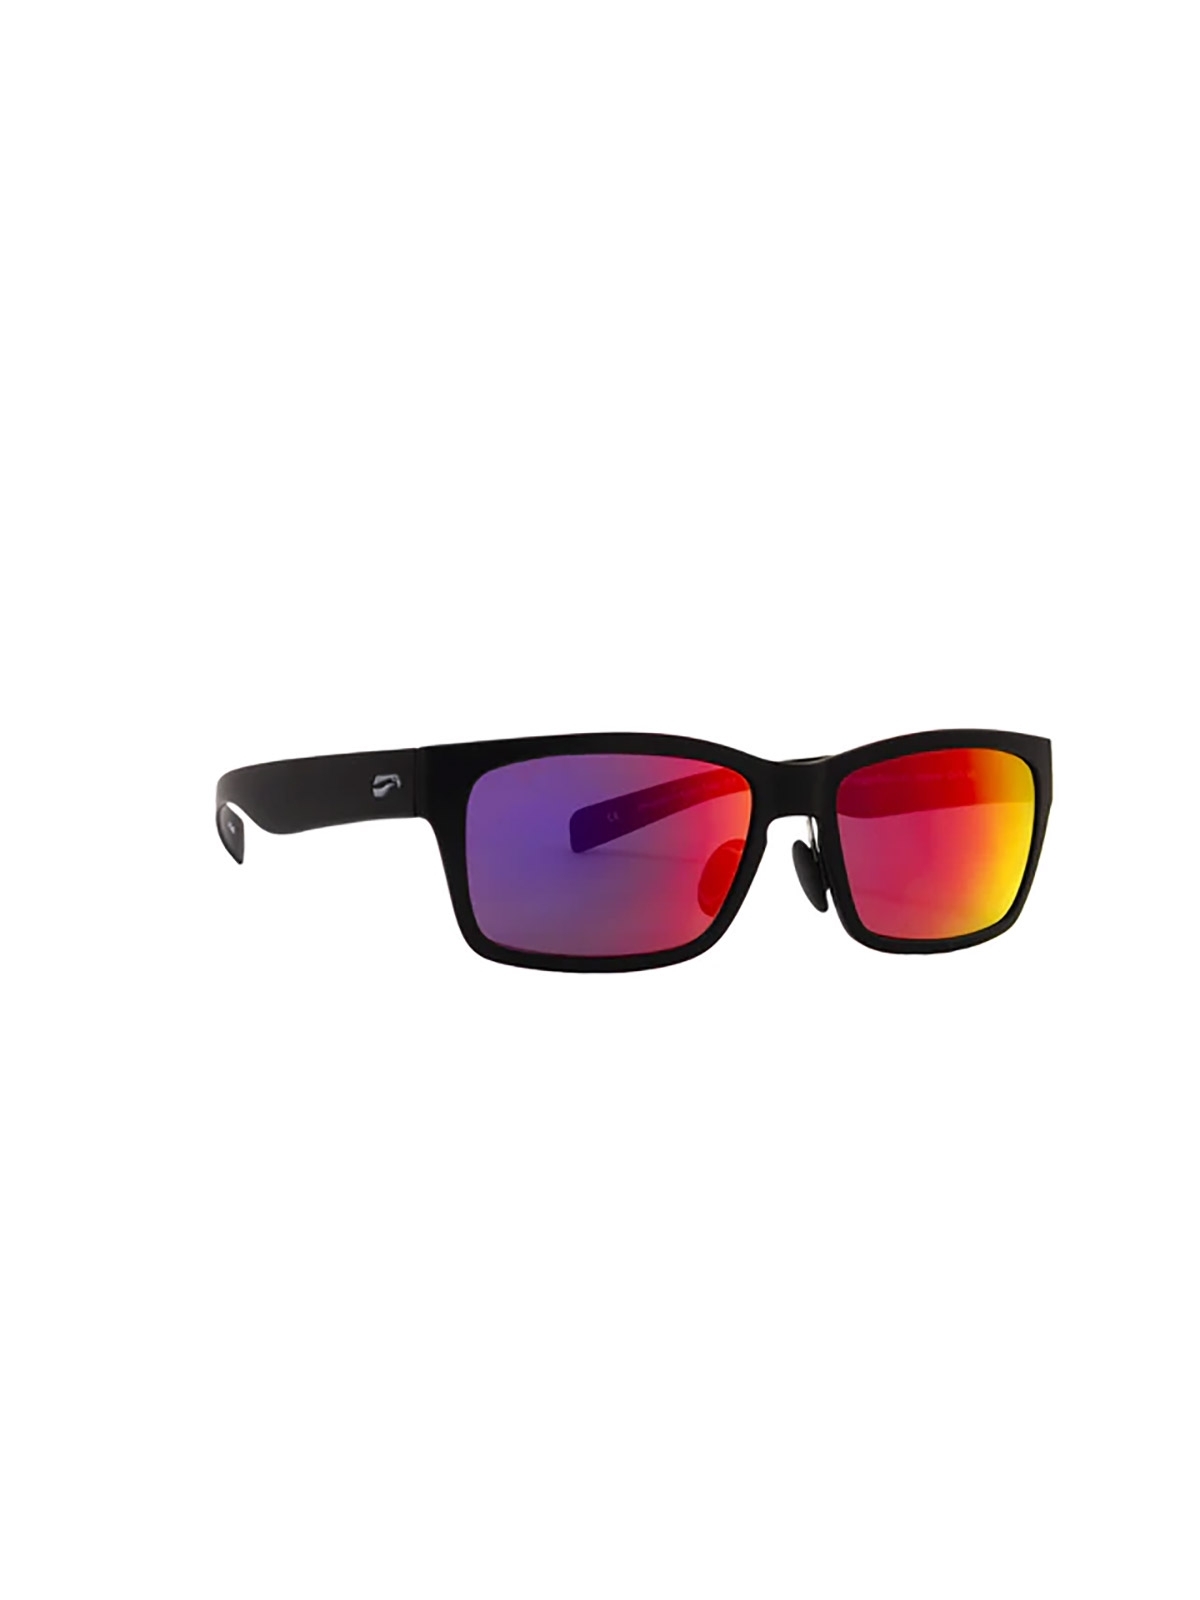 Flying Eyes Sunglasses Kingfisher - Matte Black Frame, Mirrored Sunset Lenses